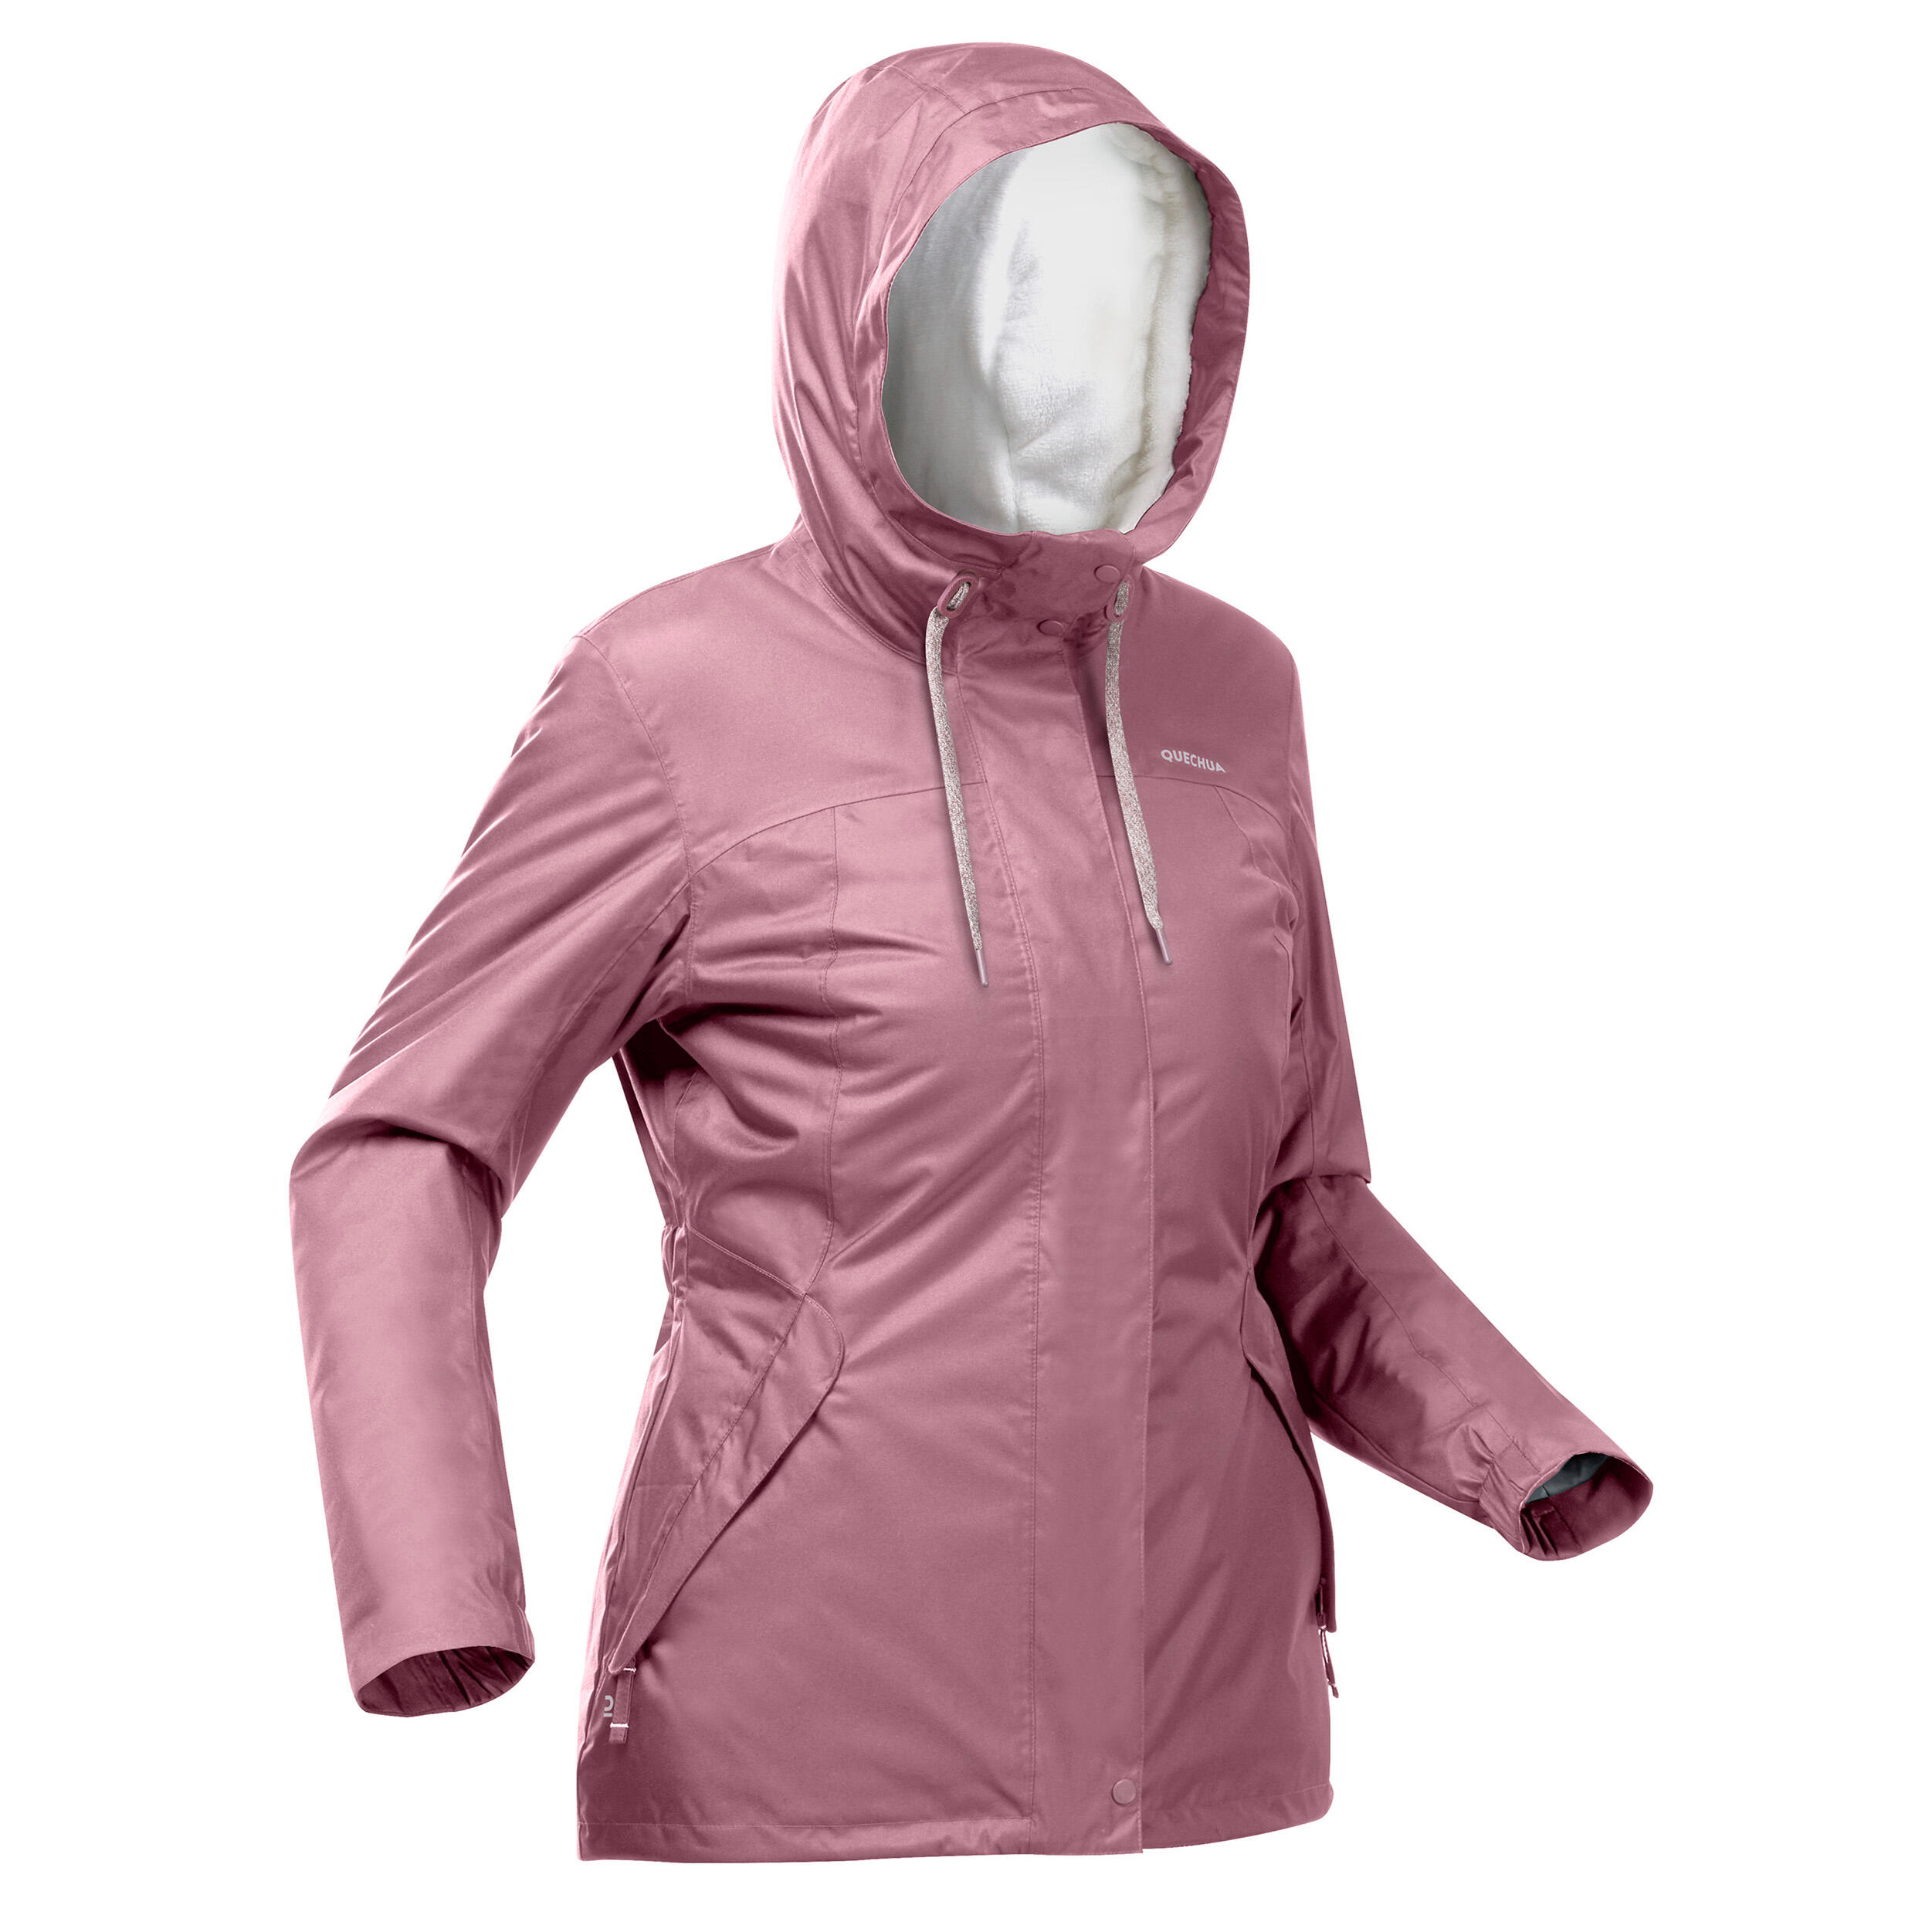 Women’s hiking waterproof winter jacket - SH500 -10°C 4/11